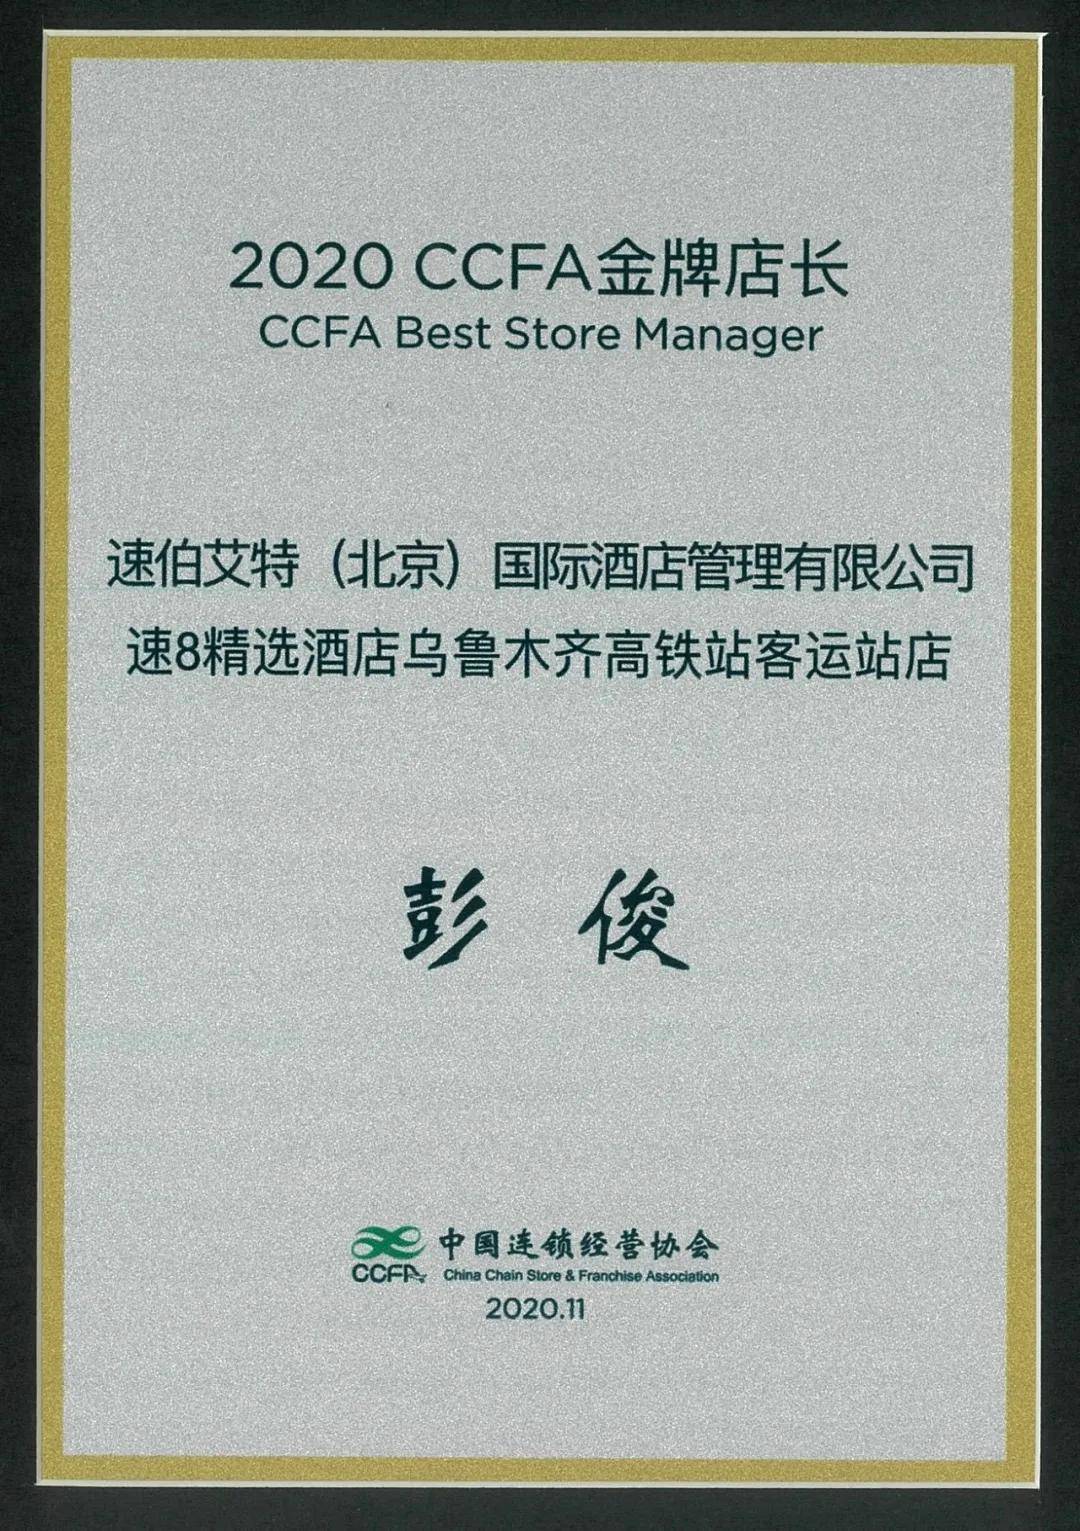 速8精选酒店彭俊荣获中国连锁经营协会2020年度ccfa金牌店长荣誉